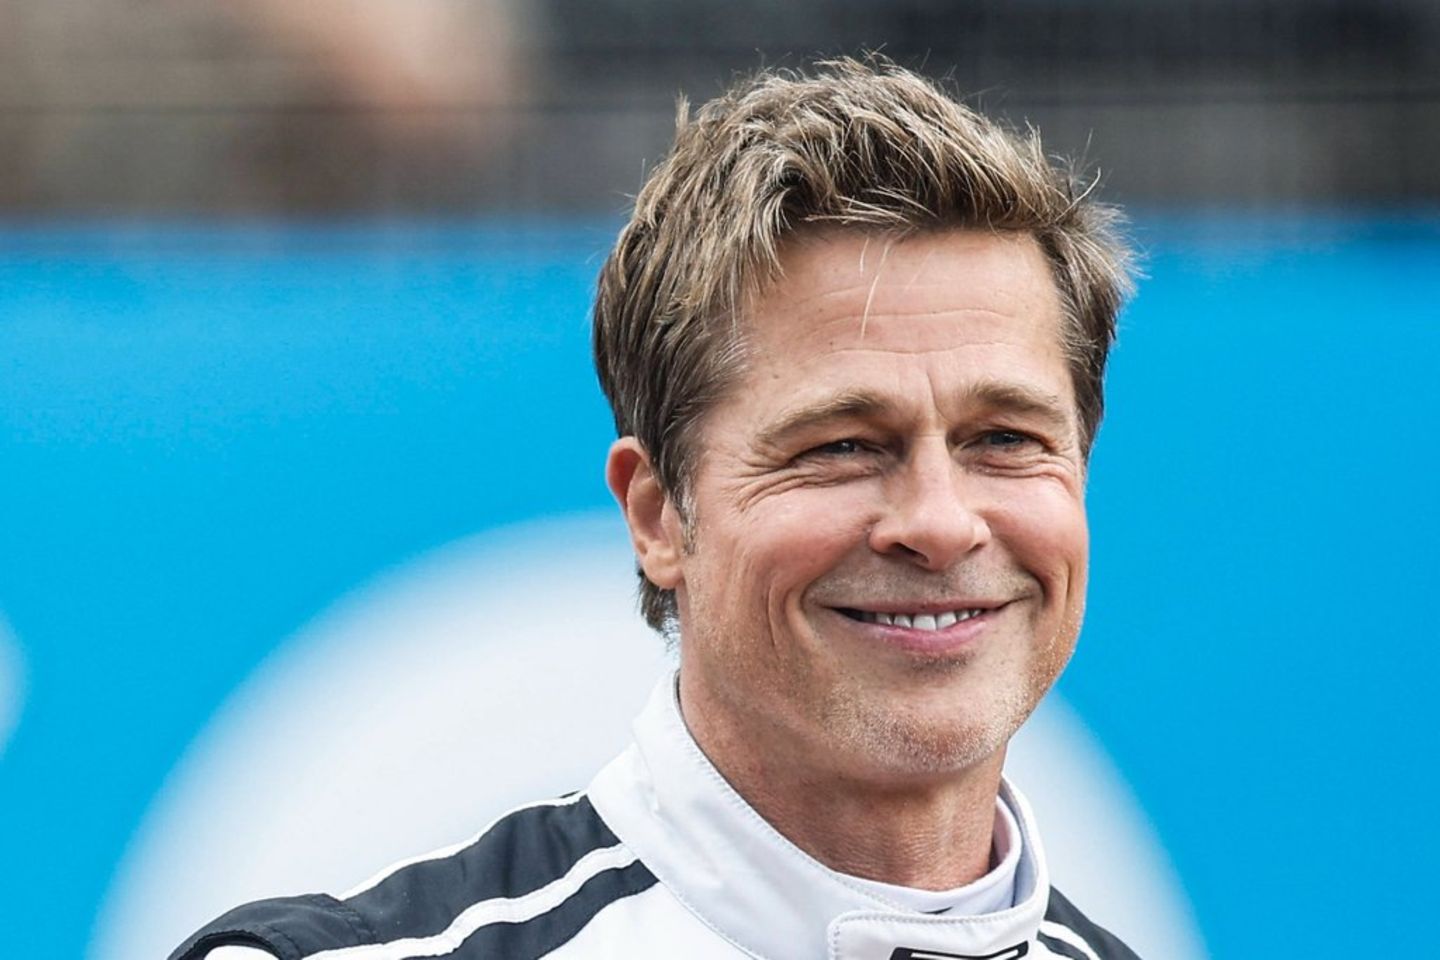 Brad Pitt spielt in seinem neuen Film einen Rennfahrer.